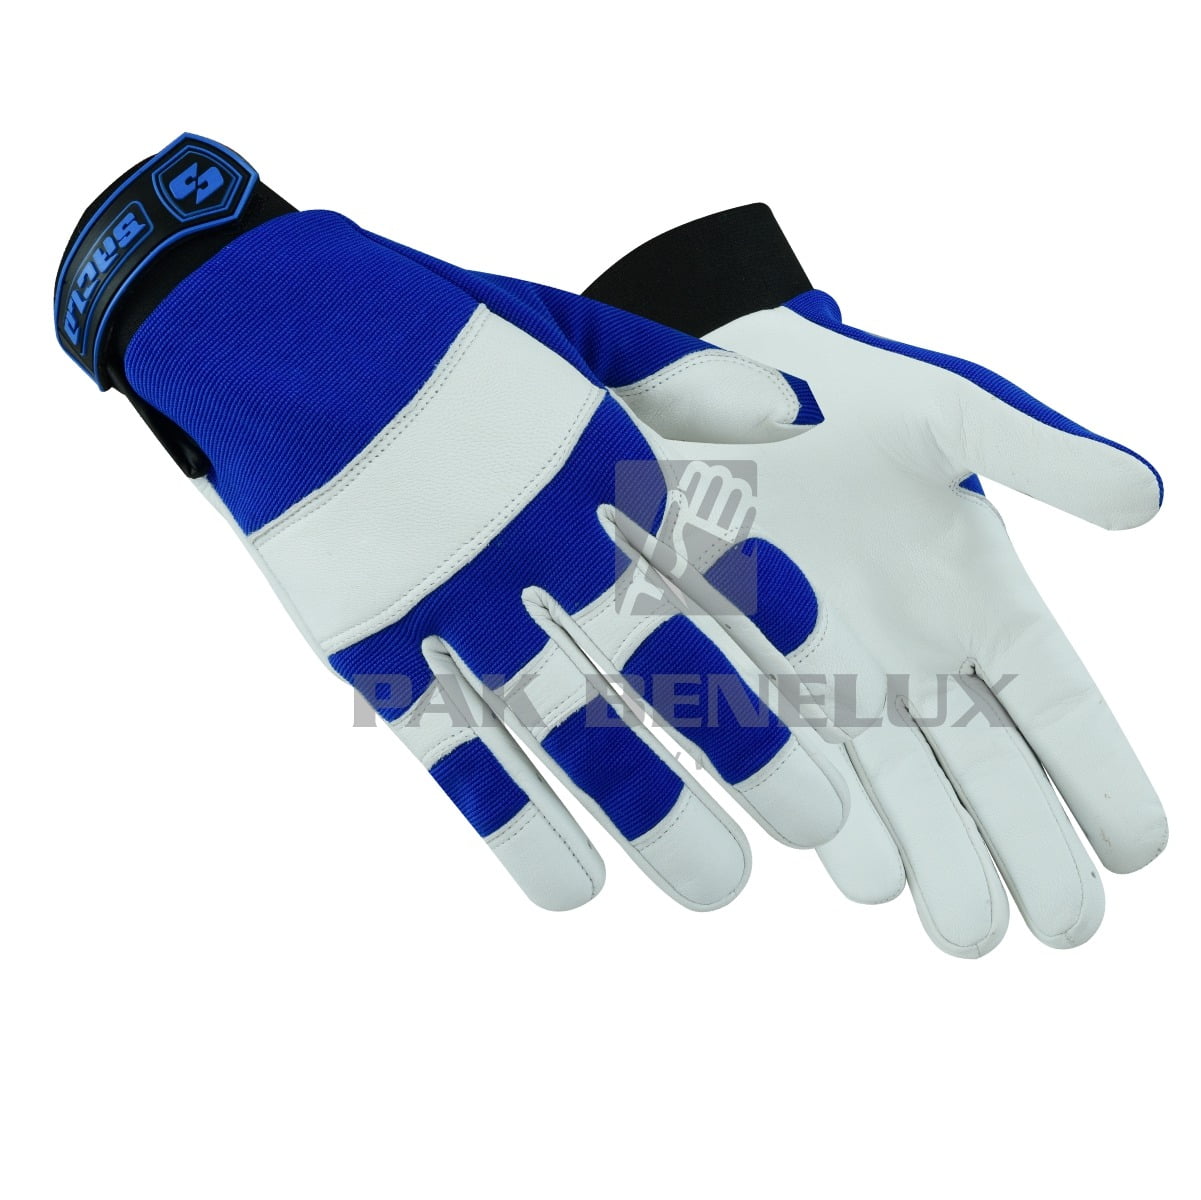 Mechanic Gloves Durable